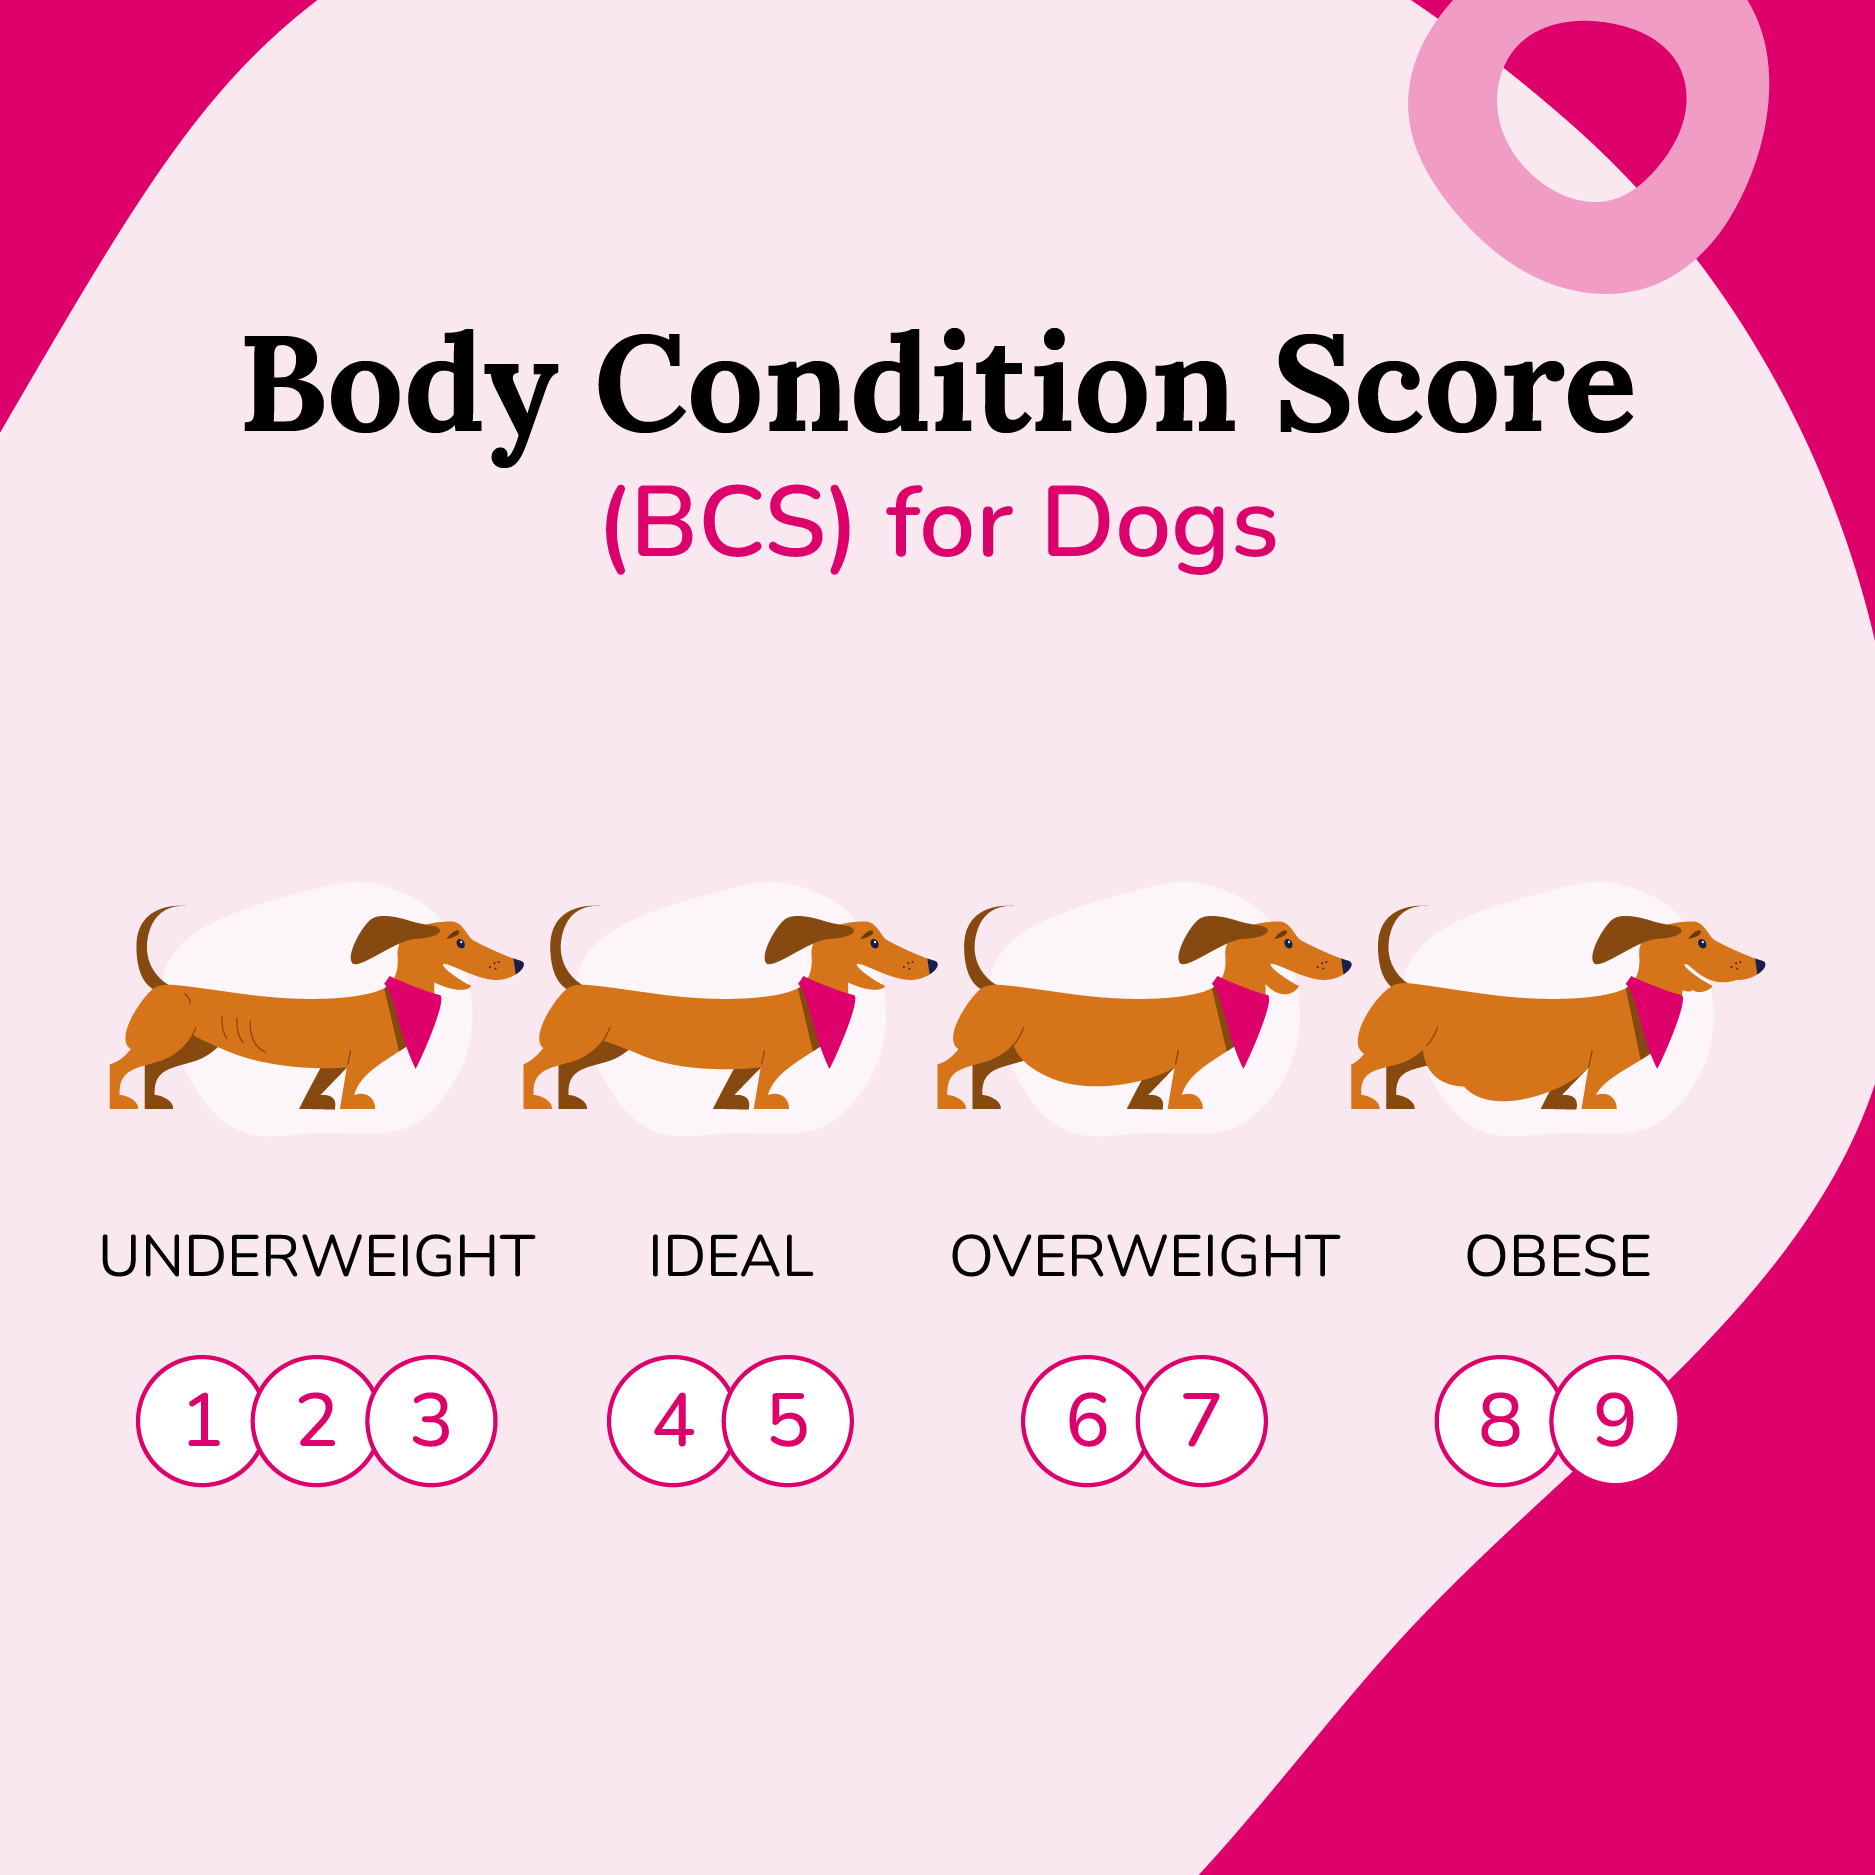 https://bettervet.com/hs-fs/hubfs/body-condition-score-bcs-chart-infographic.png?width=1875&height=1875&name=body-condition-score-bcs-chart-infographic.png